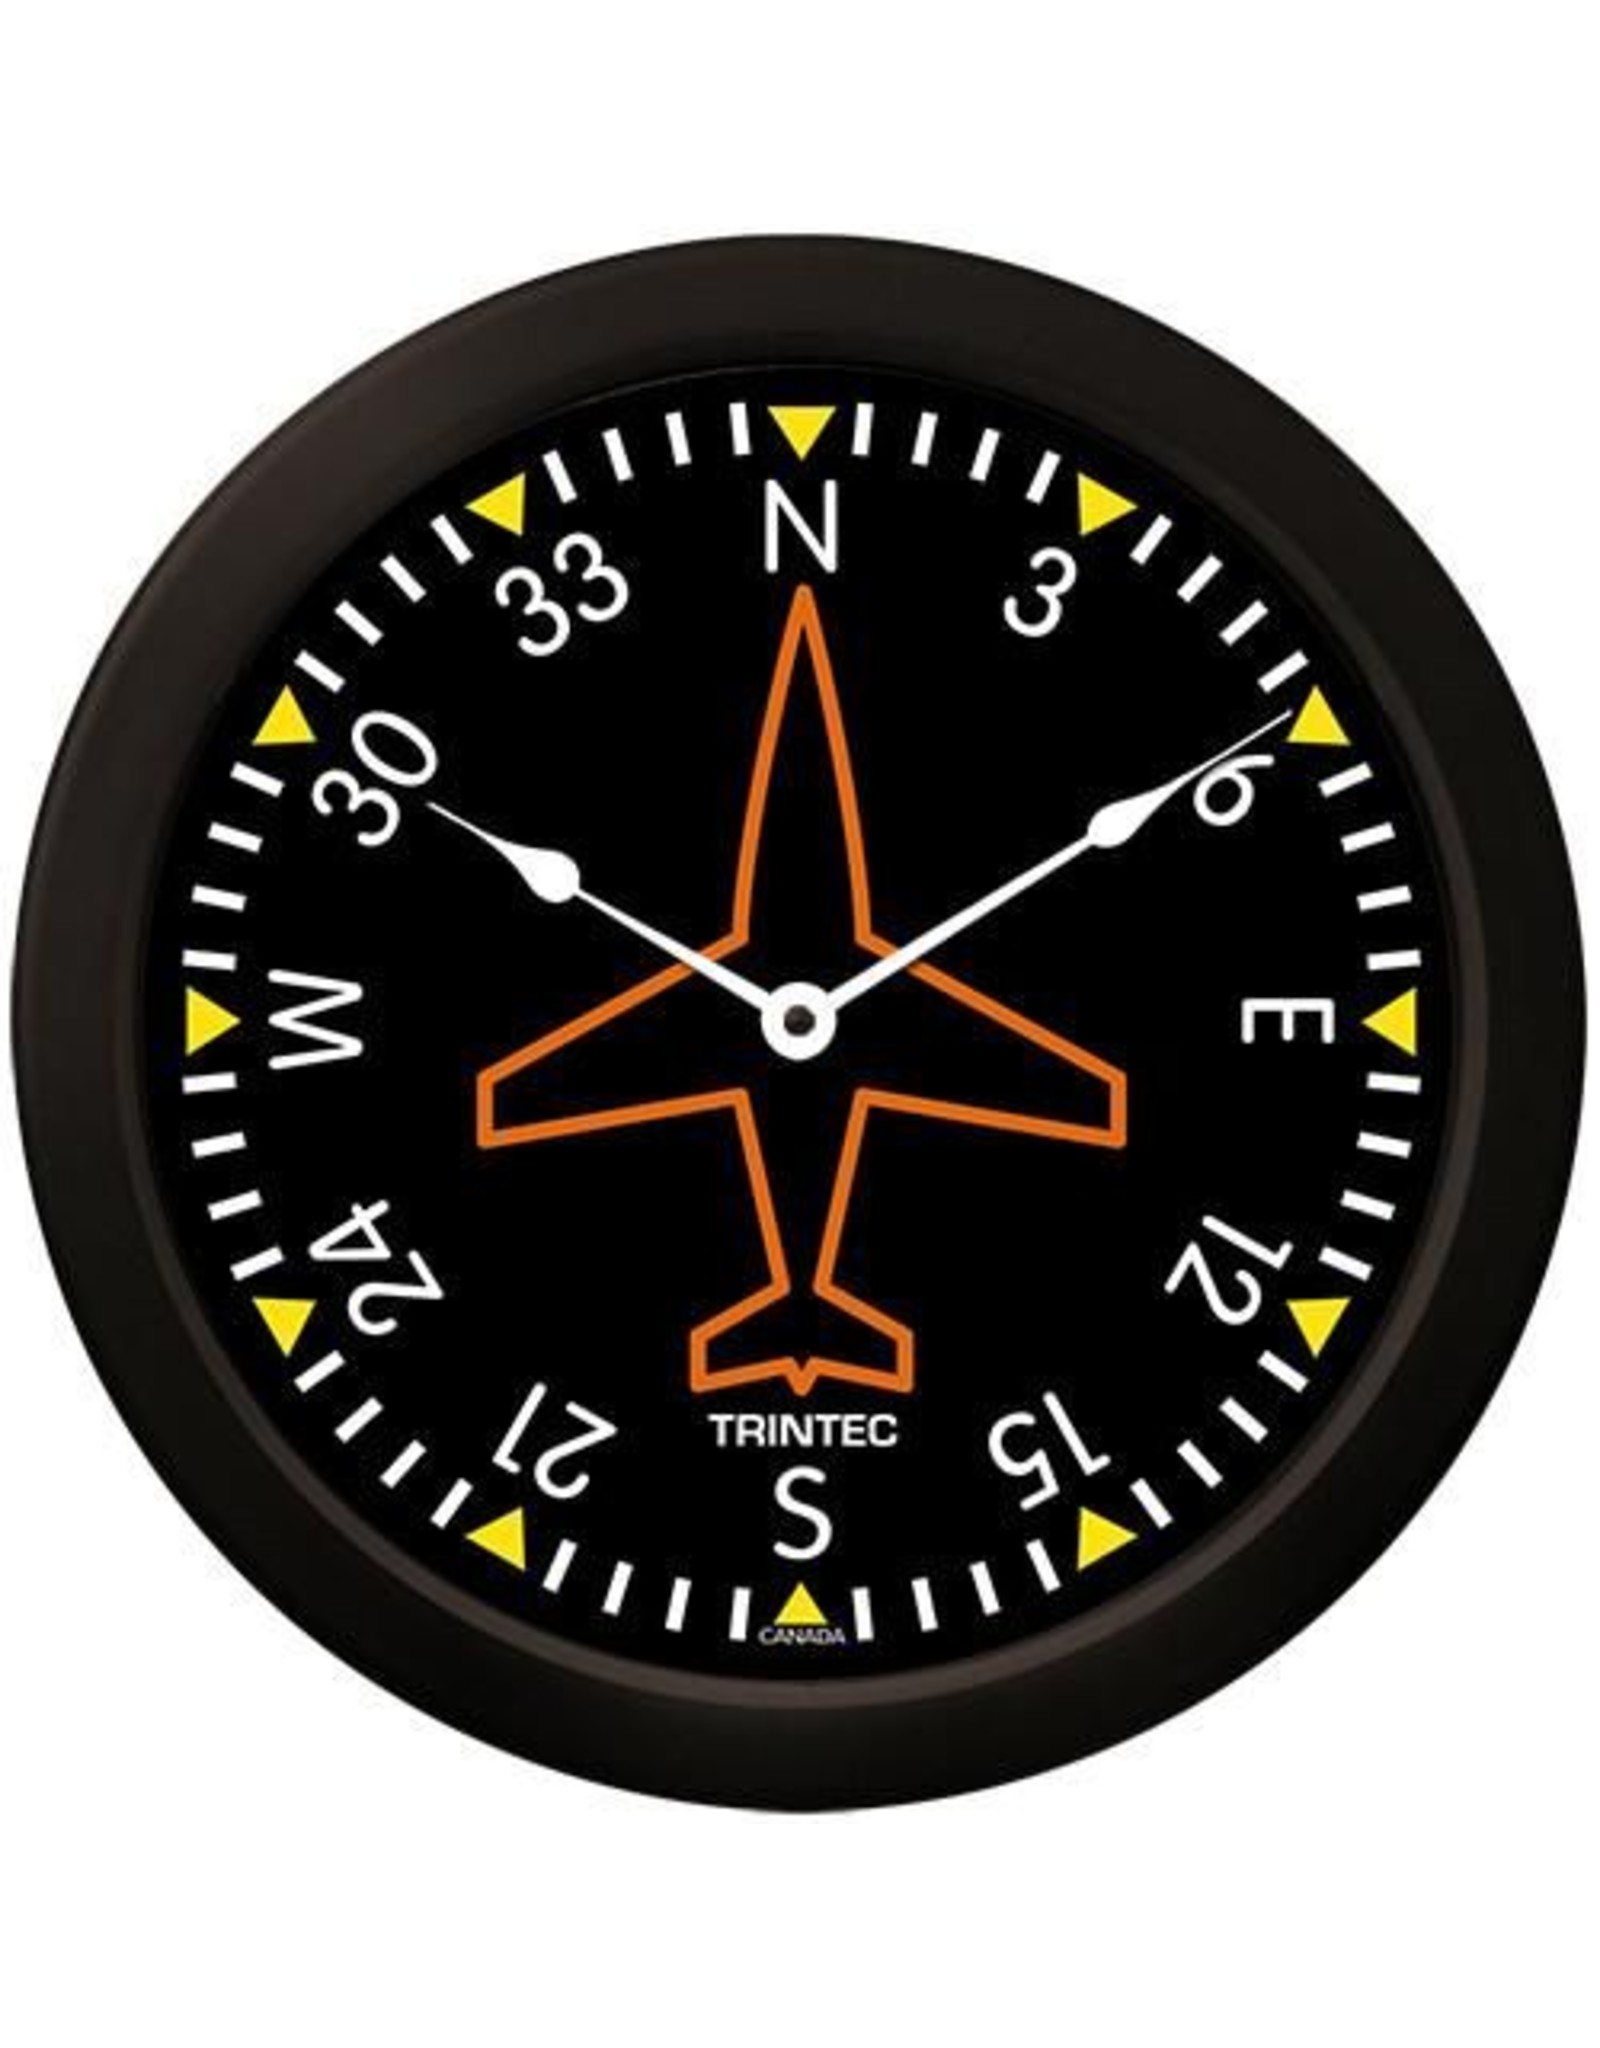 Trintec Gyro Clock 14 inch 9062-14